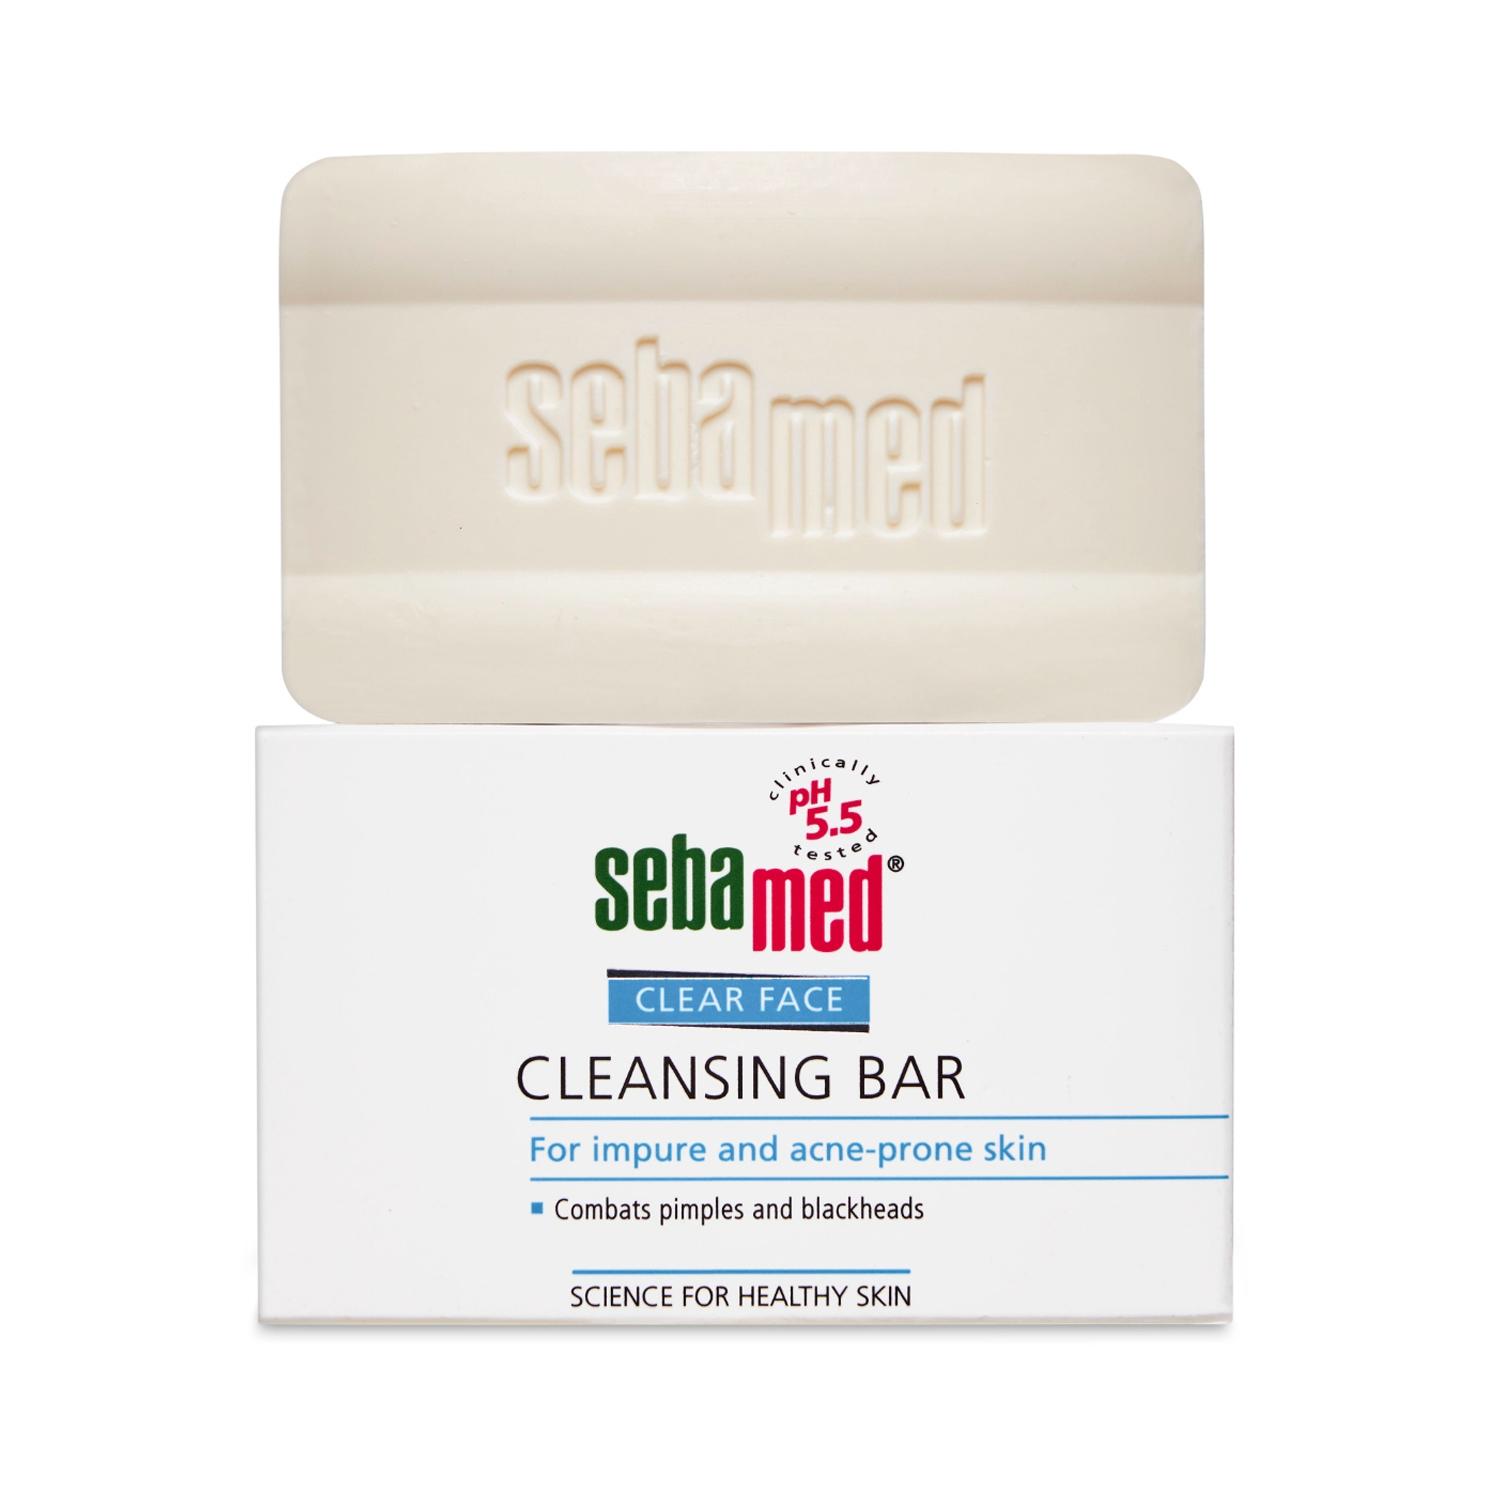 Sebamed Clear Face Cleansing Bar (100g)